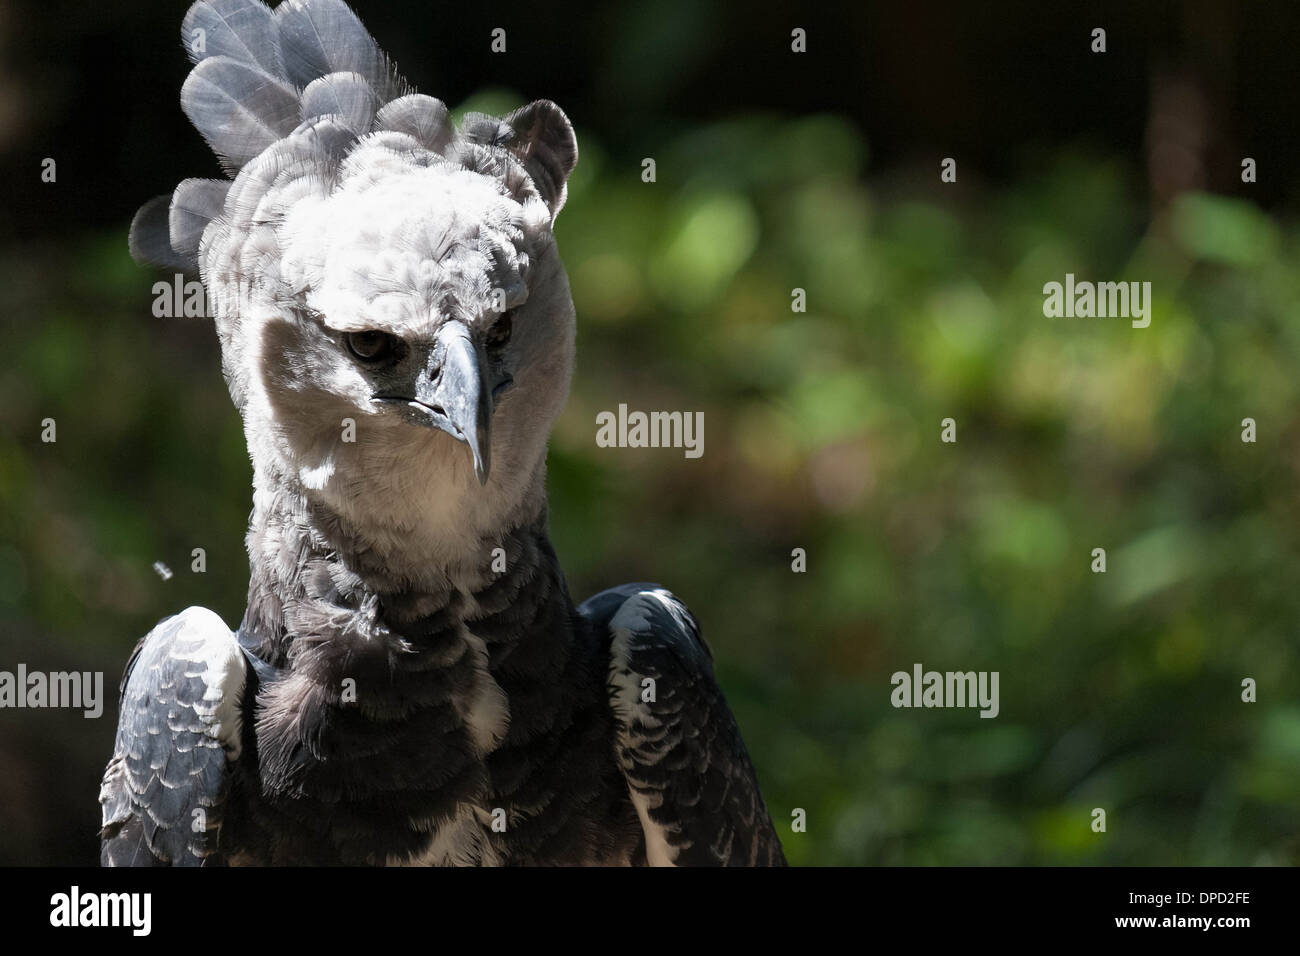 Harpy Eagle (Harpia harpyja) portrait Stock Photo